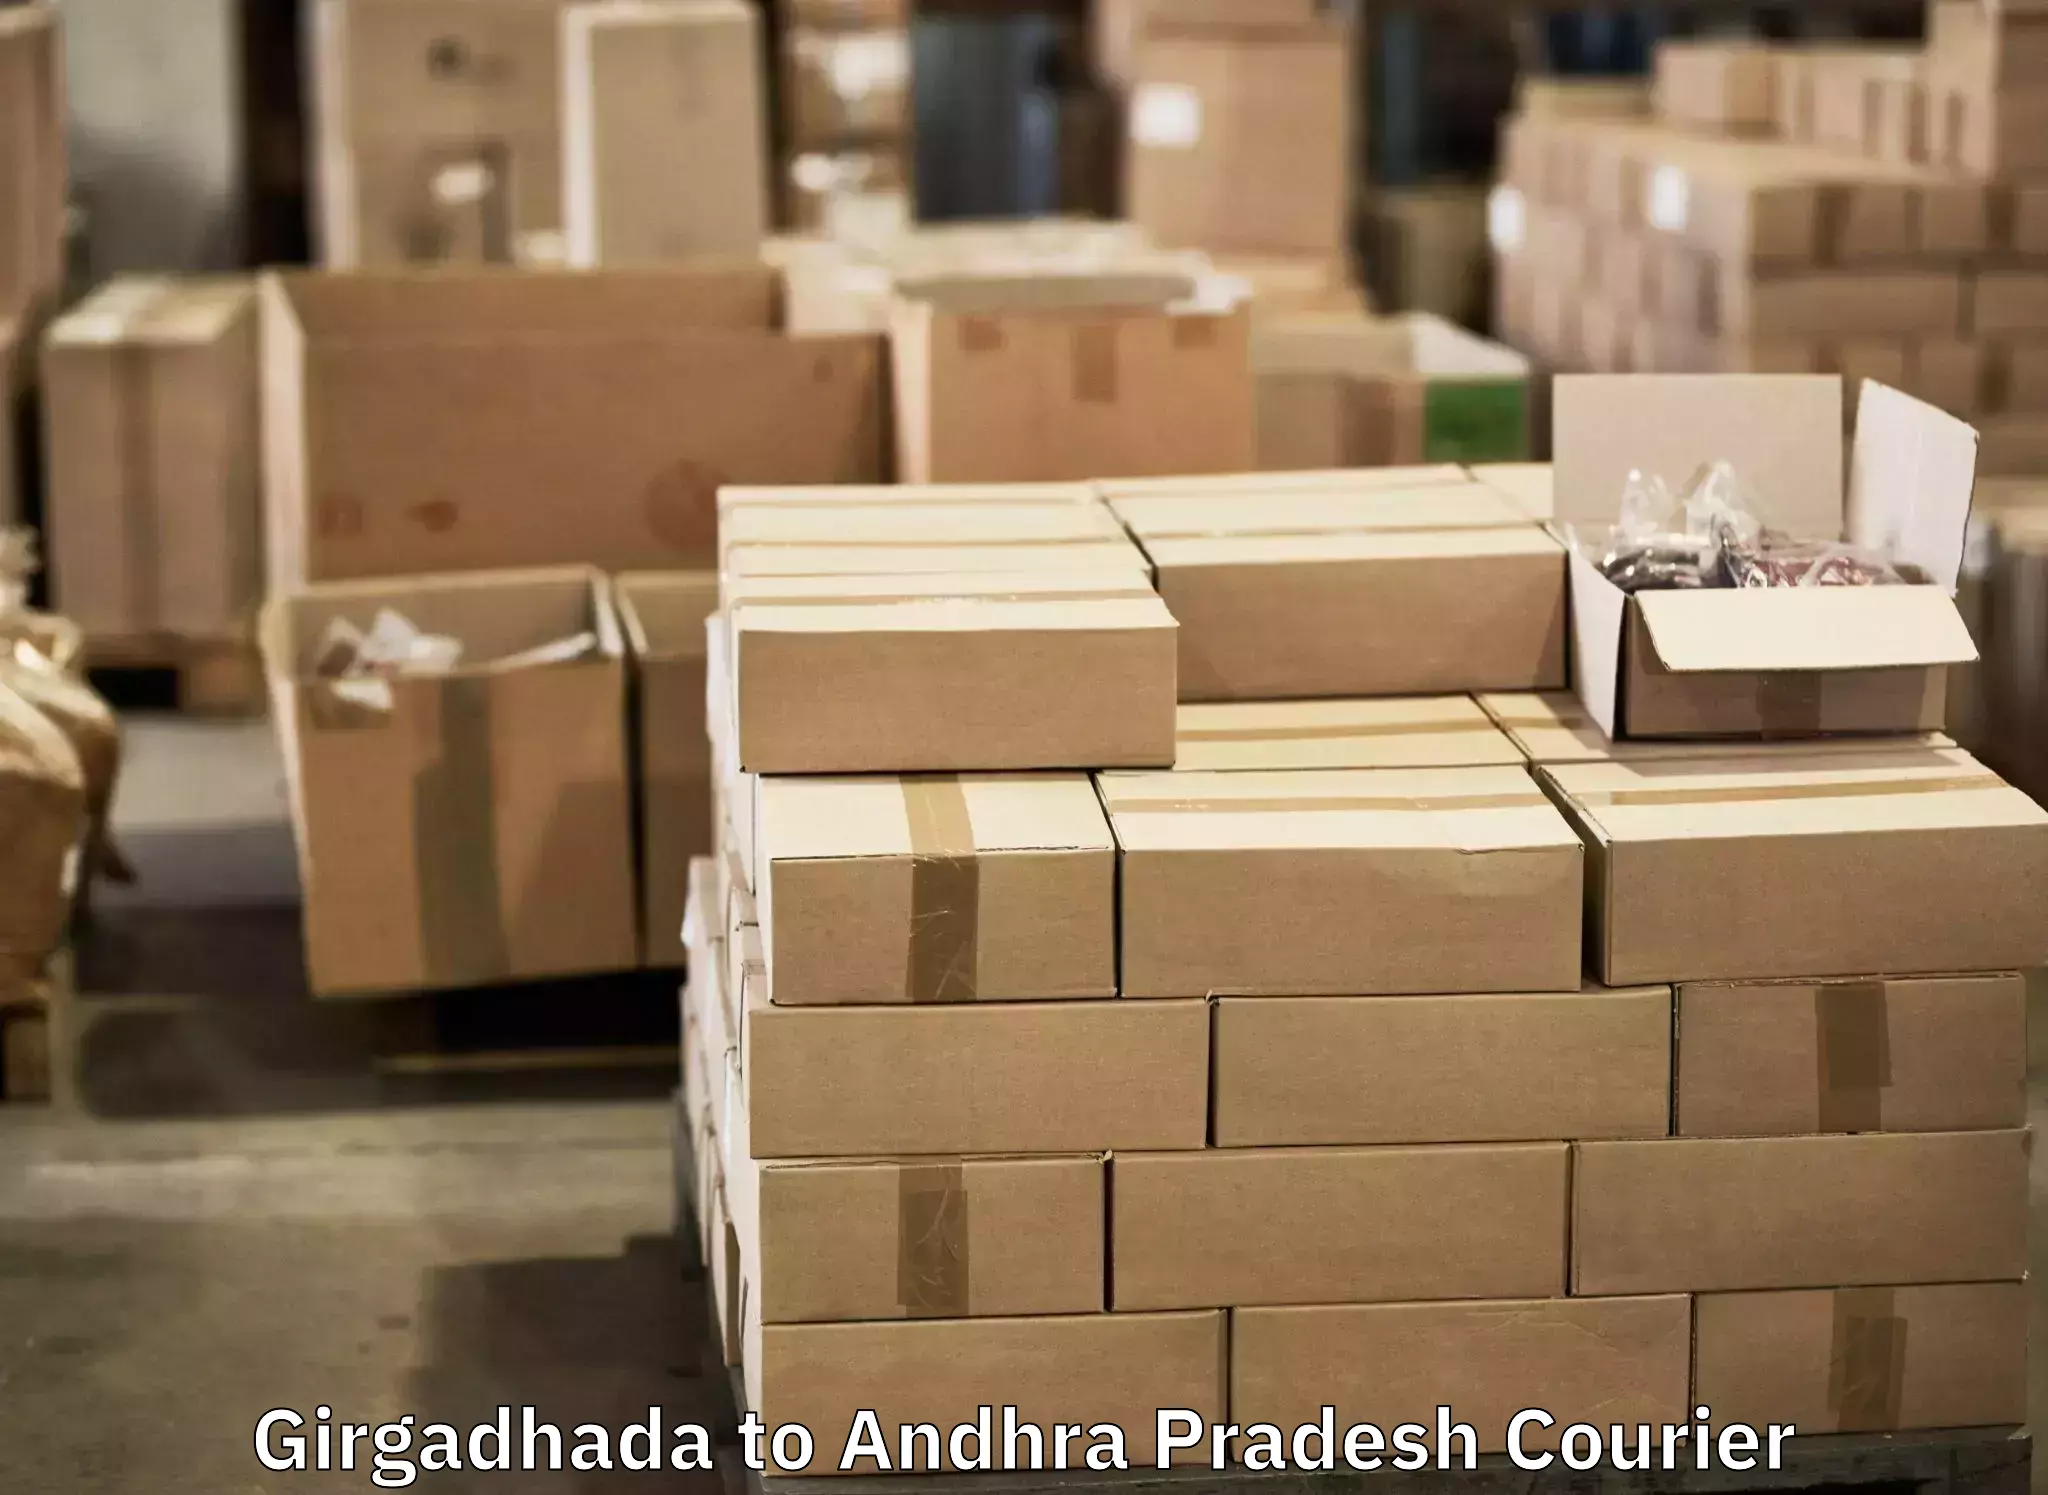 Baggage courier rates in Girgadhada to IIT Tirupati